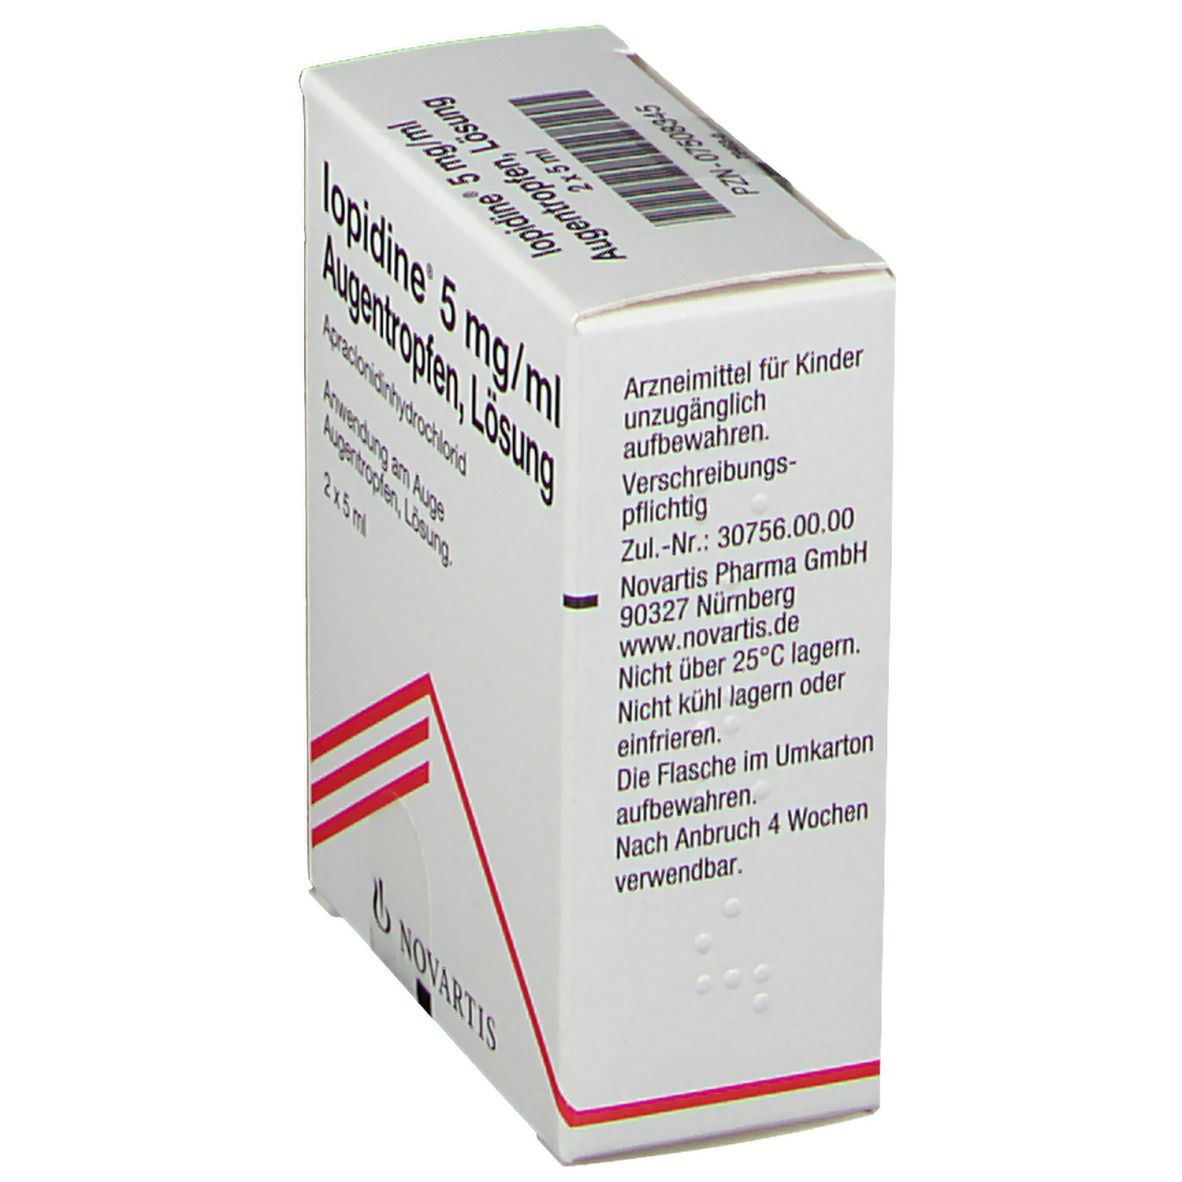 Iopidine® 5 mg/ml